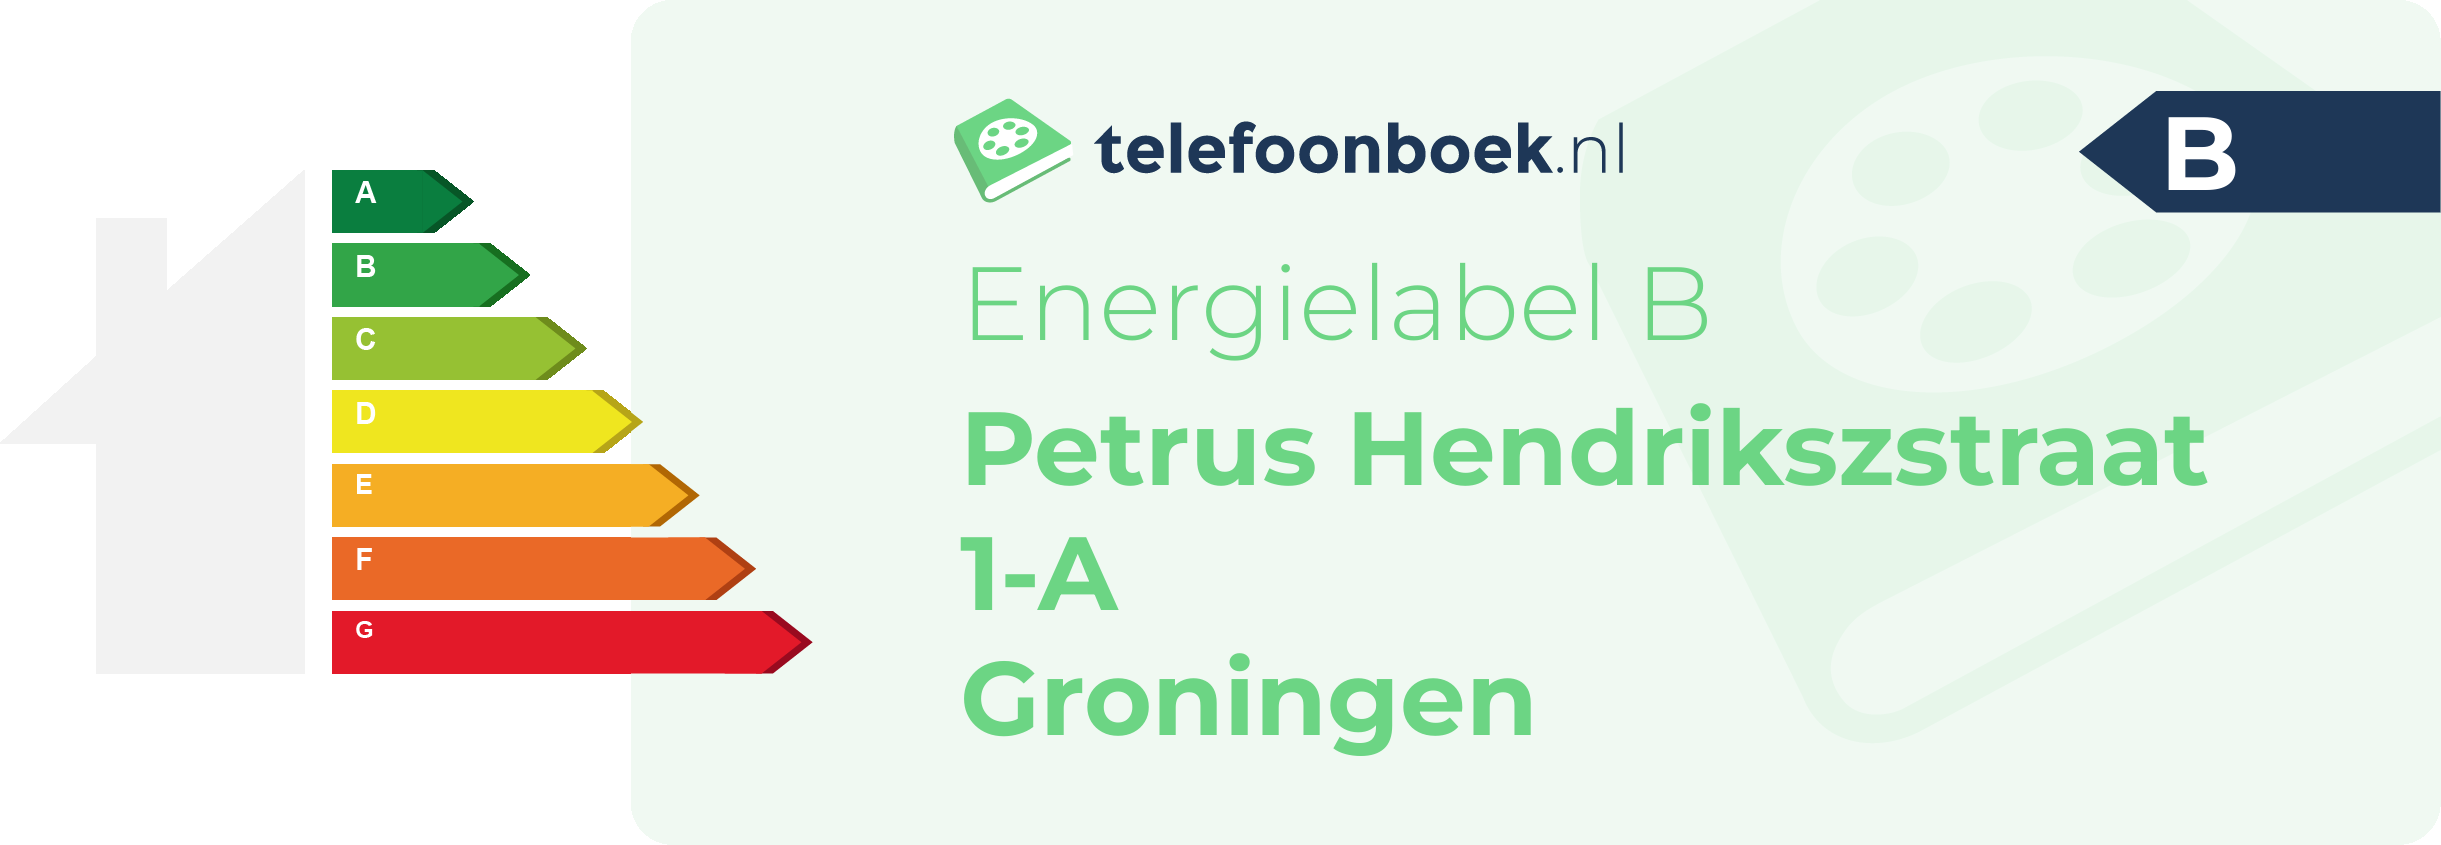 Energielabel Petrus Hendrikszstraat 1-A Groningen